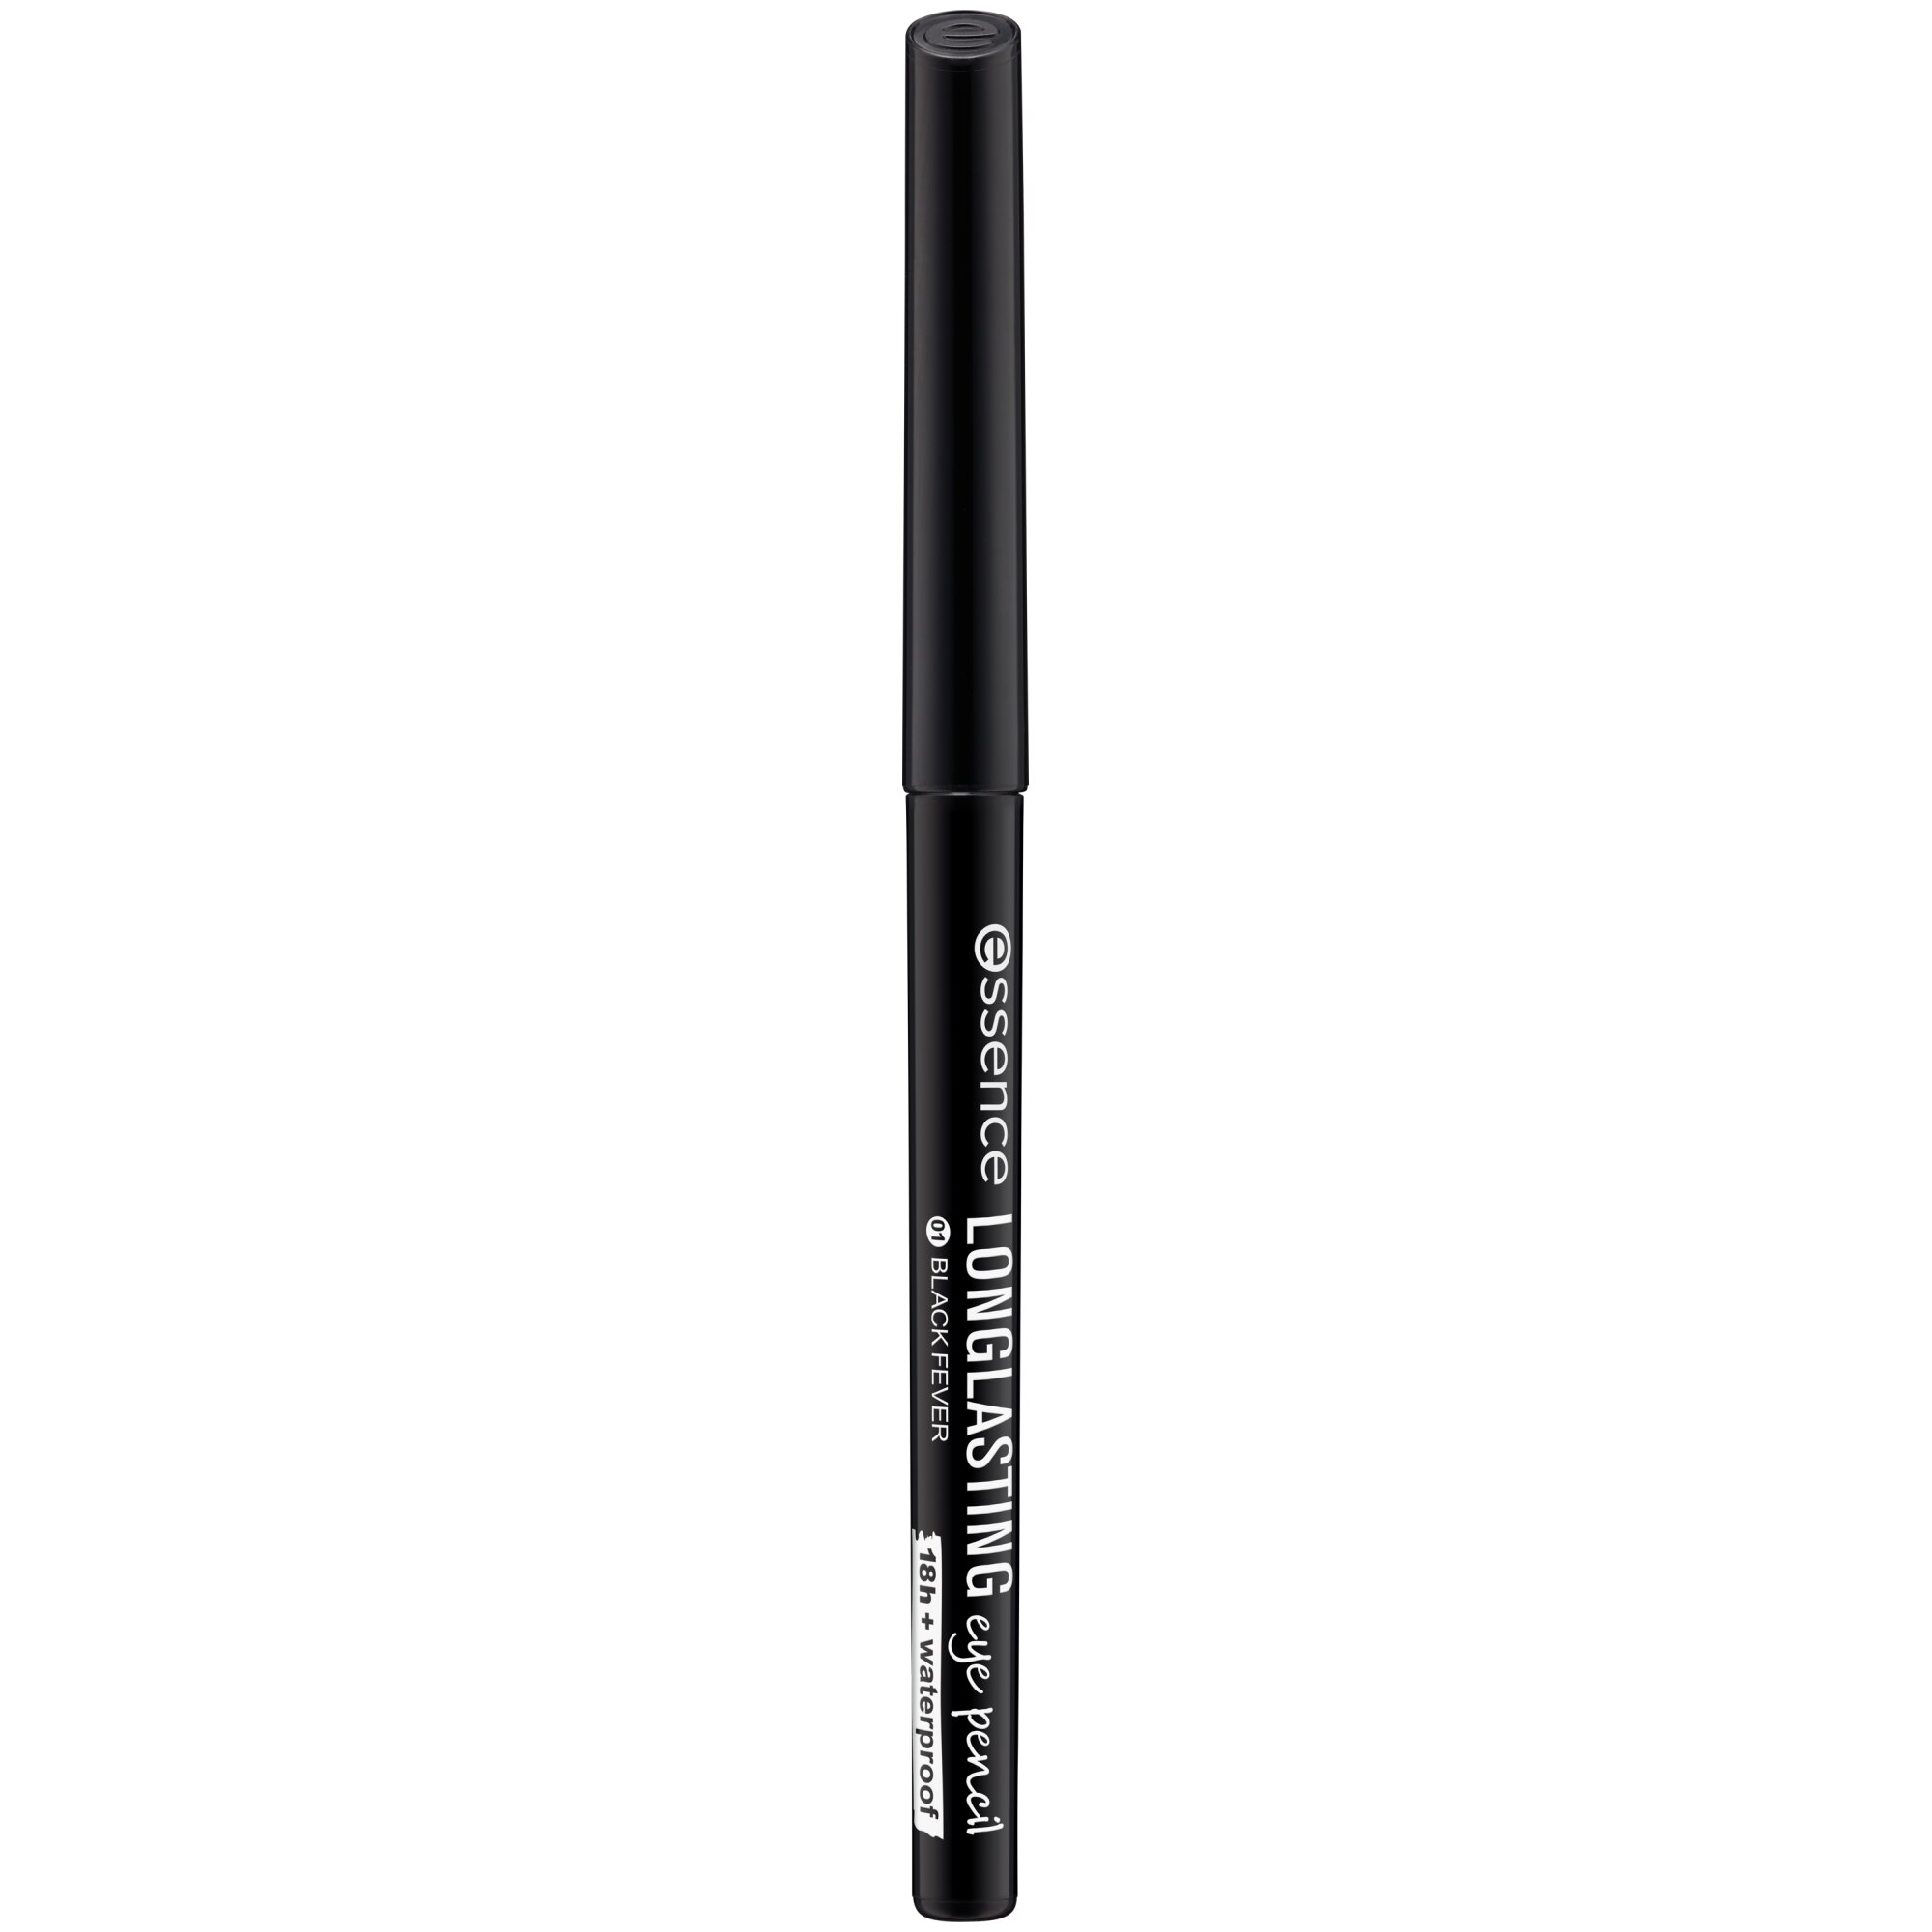 Creion pentru ochi Long-Lasting, 01 - Black Fever, 0.28 g, Essence